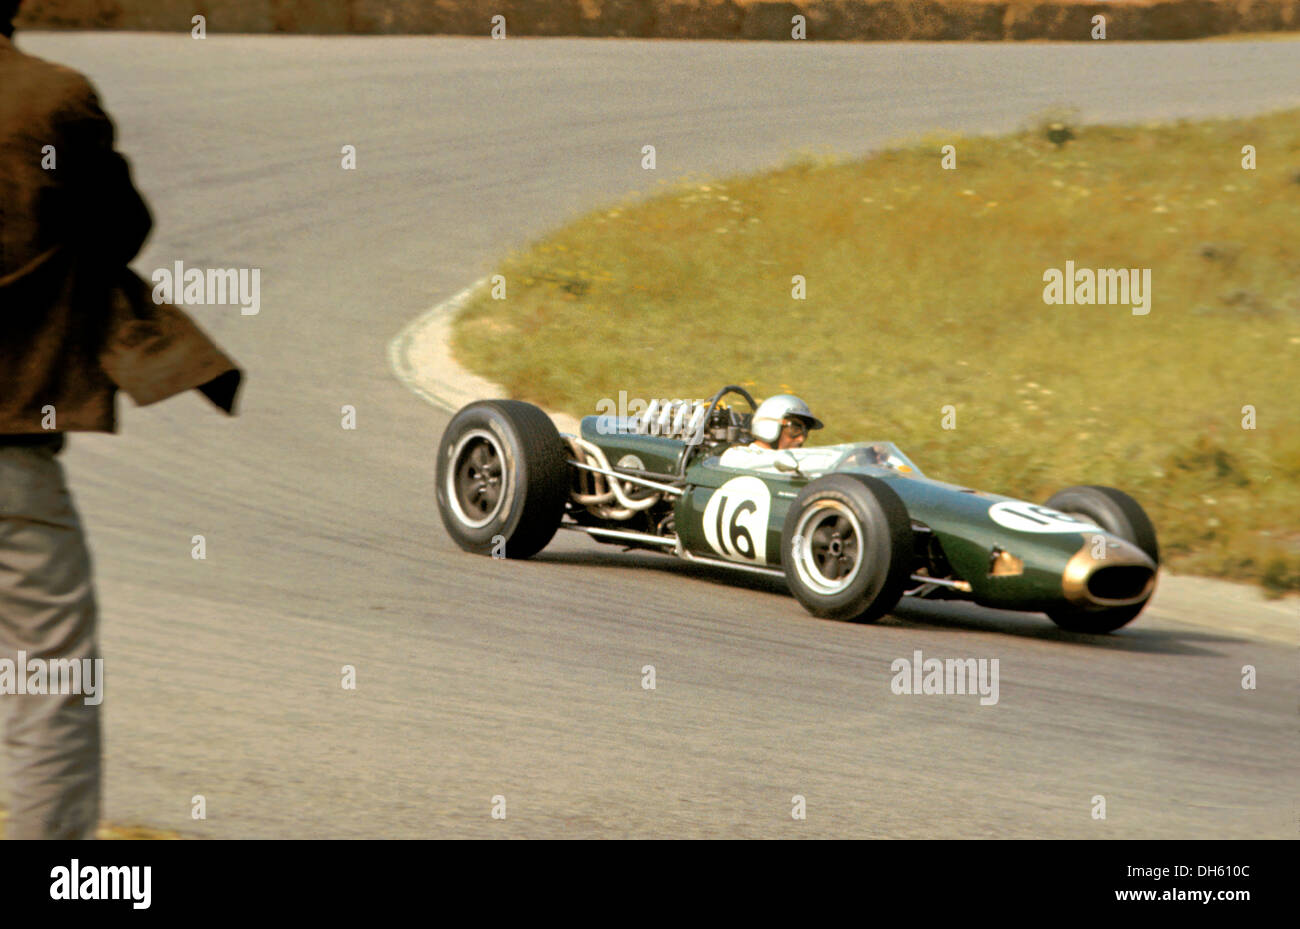 Jack Brabham gewann den niederländischen Grand Prix in dieser Repco BT19. Hunzerug Ecke, Zandvoort, Niederlande 24. Juli 1966. Stockfoto